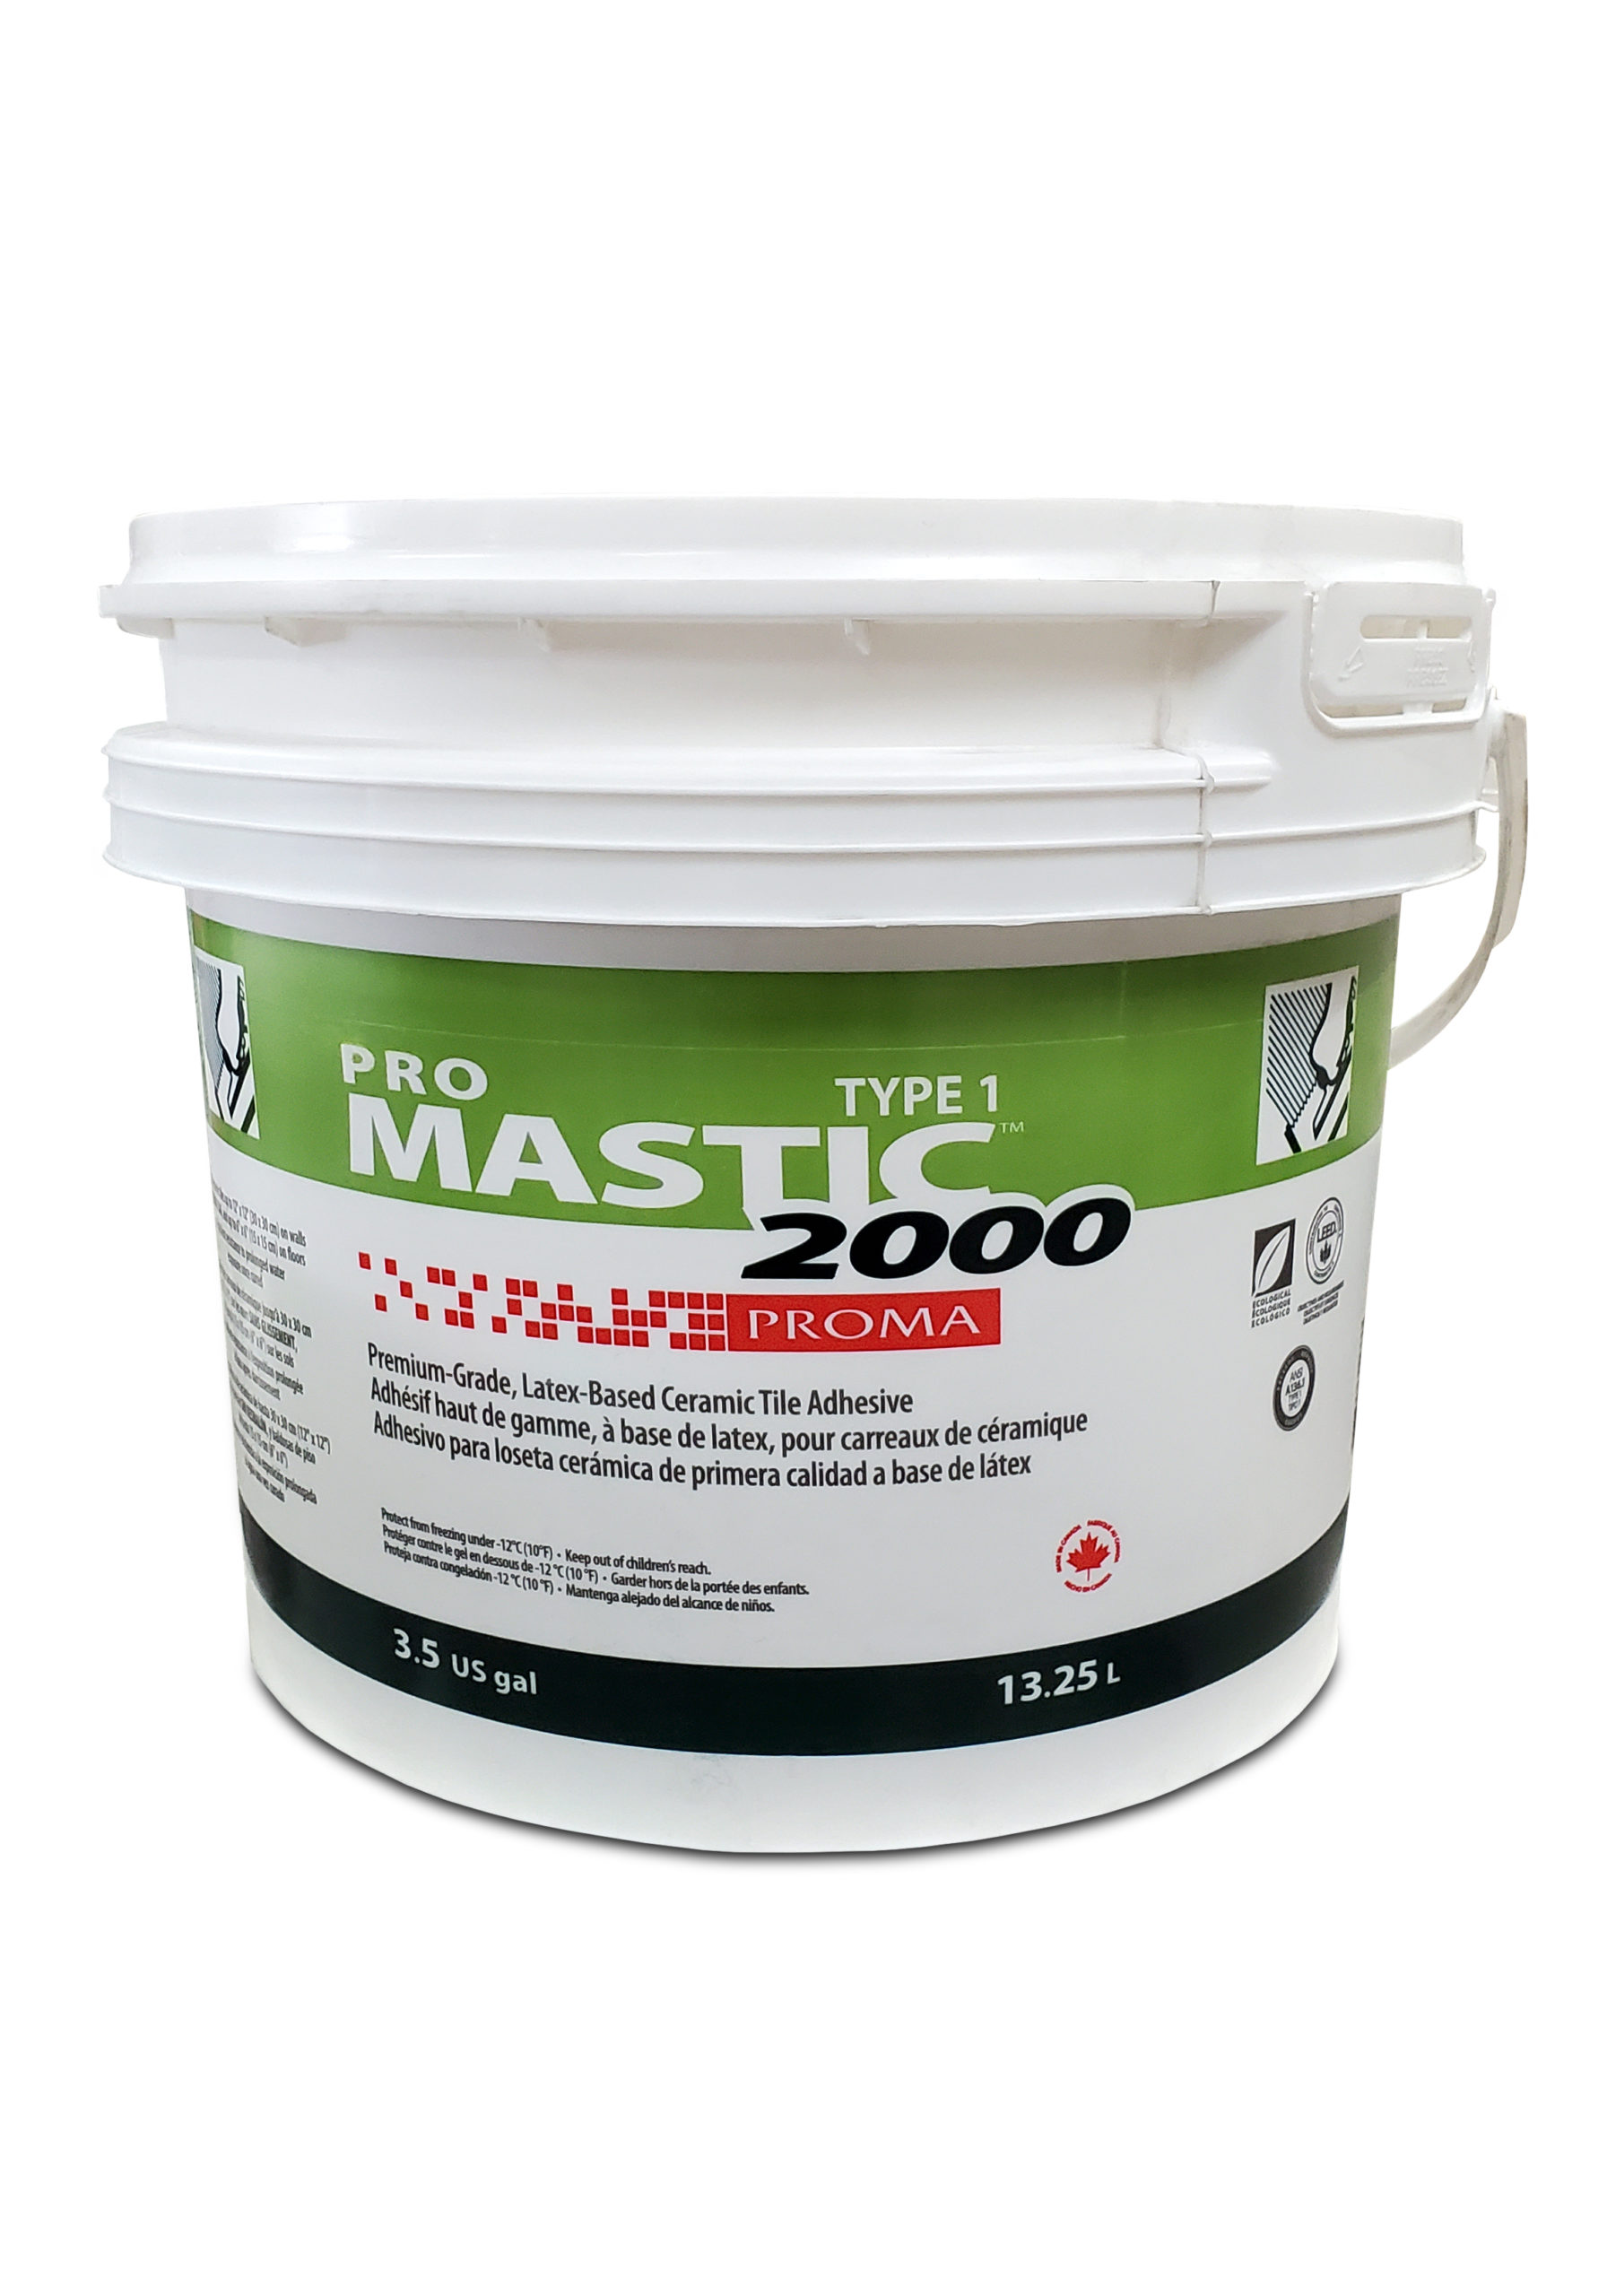 Pro Type 1 Mastic 2000 Premium Latex Ceramic Tile Adhesive_12.25L_3.5 Gal